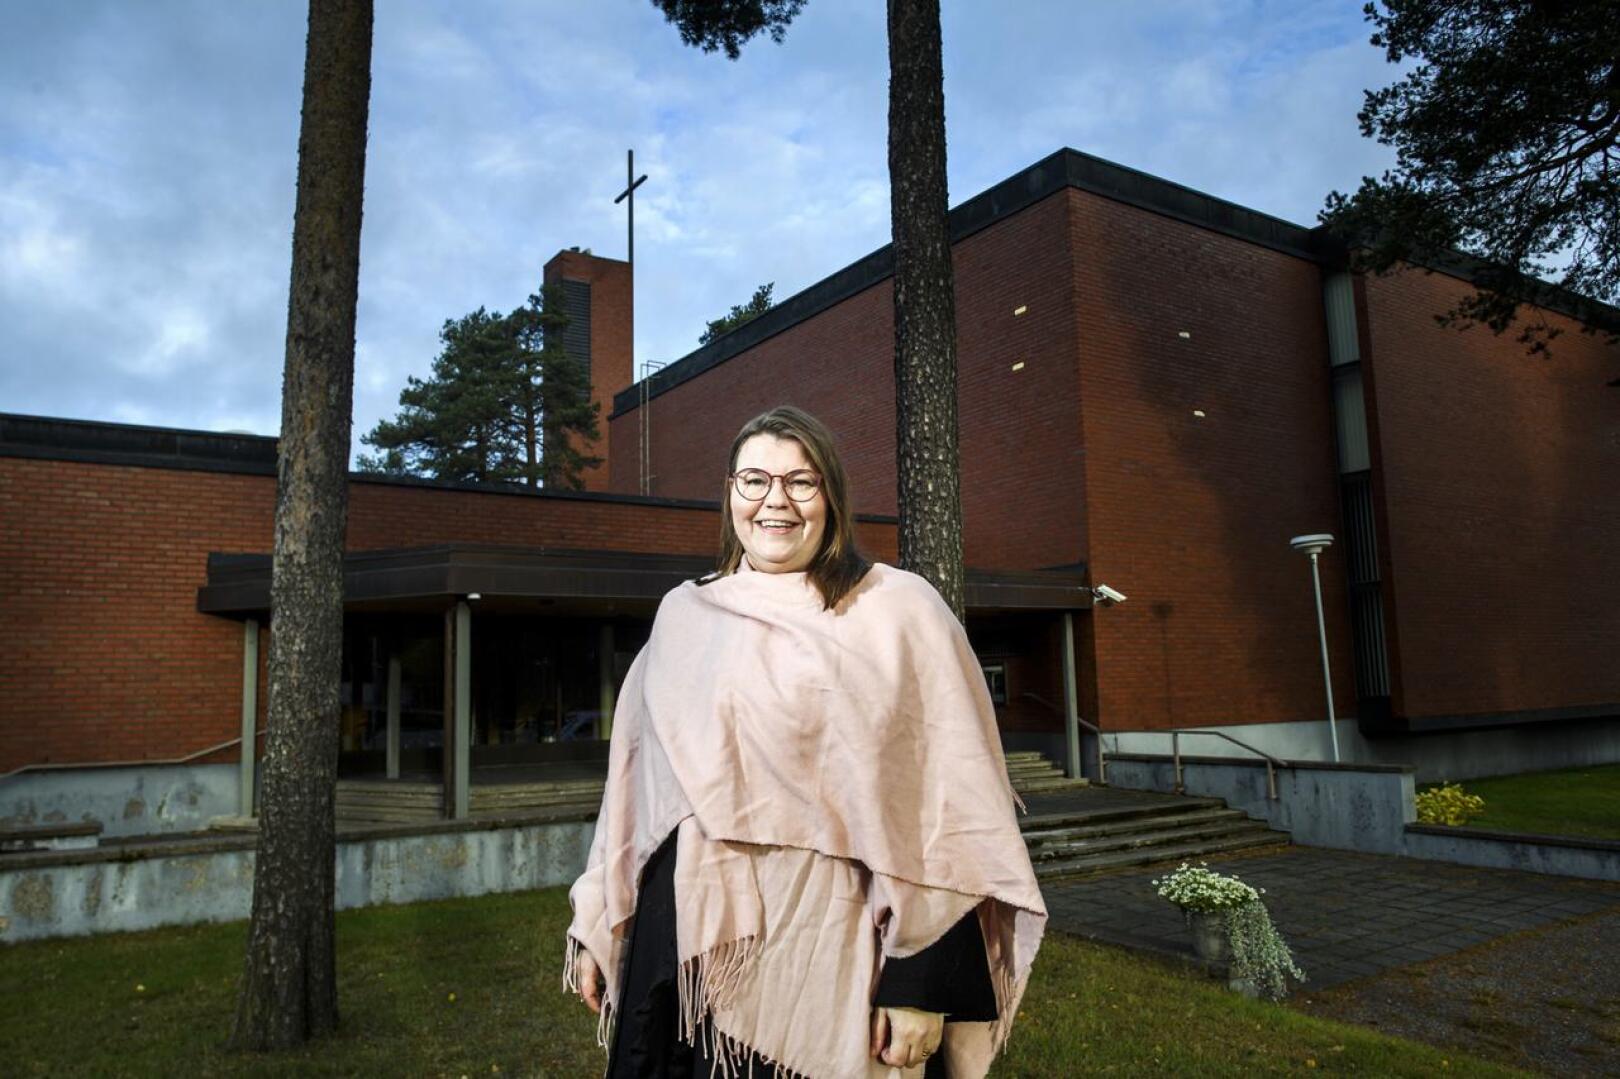 Kokkolan suomalaisen seurakunnan seurakuntaneuvosto teki viimein päätöksen valita Emilia Teerikankaan seurakunnan kappalaiseksi.